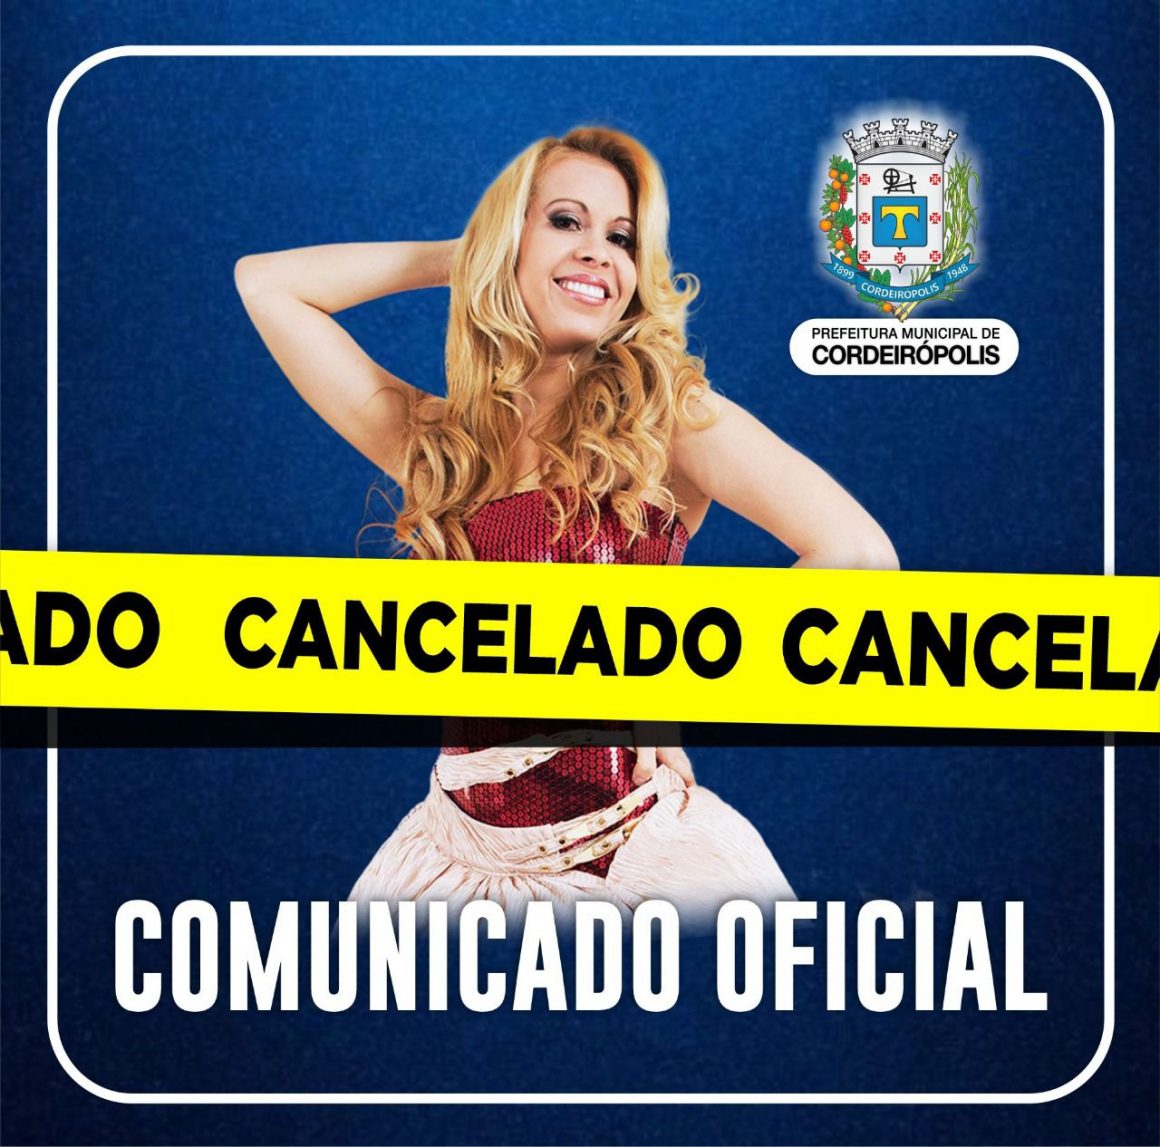 Cancelado show da cantora Joelma em Cordeirópolis por motivos de saúde